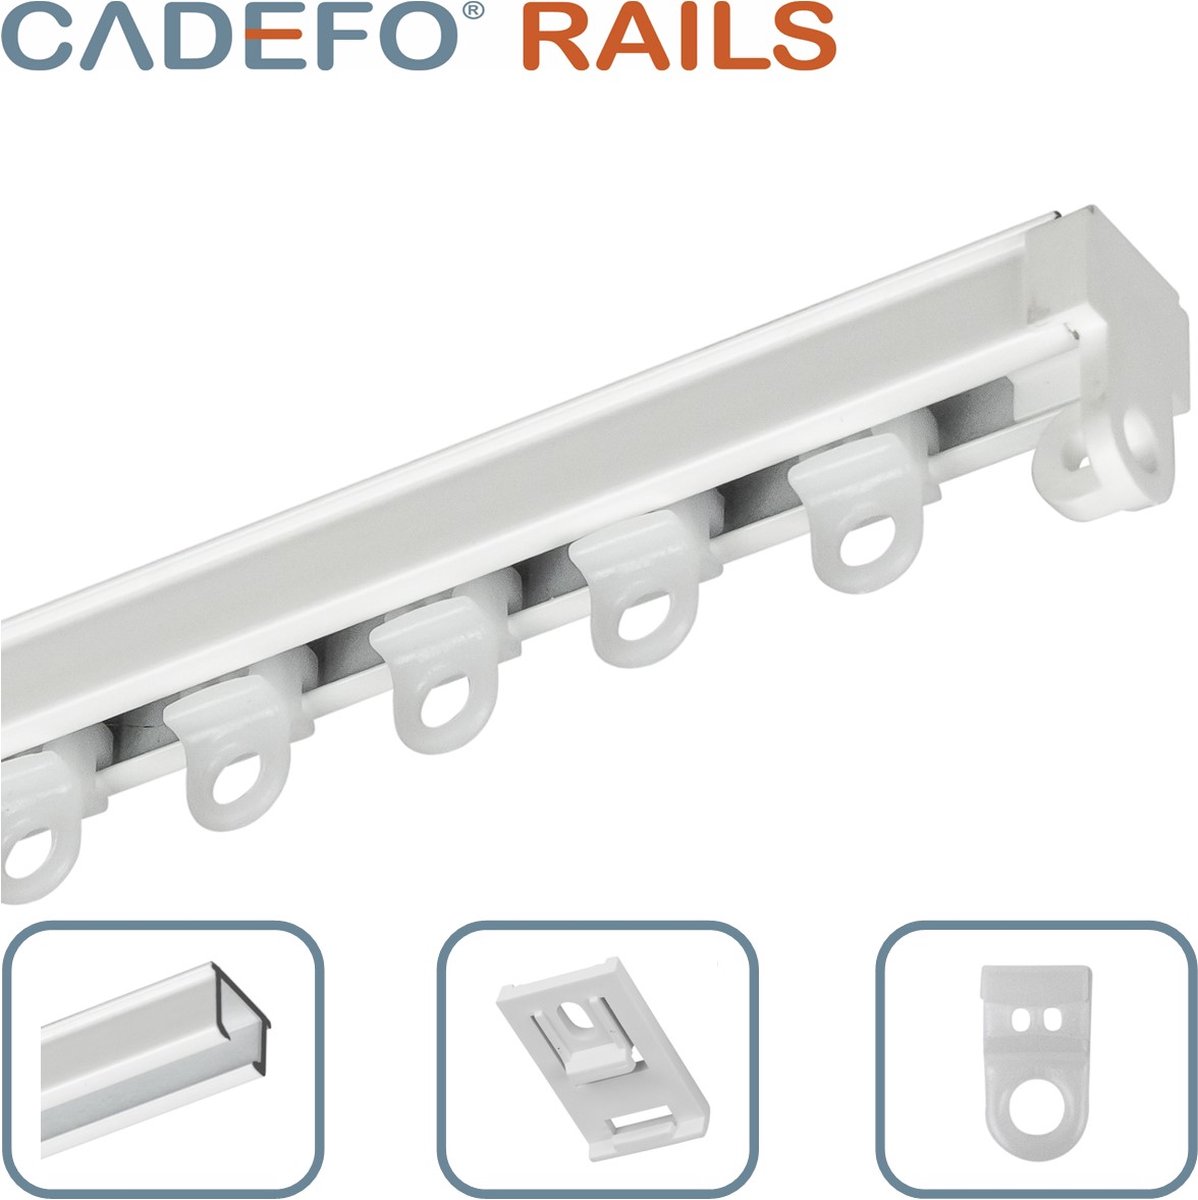 CADEFO RAILS (201 - 250 cm) Gordijnrails - Compleet op maat! - UIT 1 STUK - Leverbaar tot 6 meter - Plafondbevestiging - Lengte 228 cm